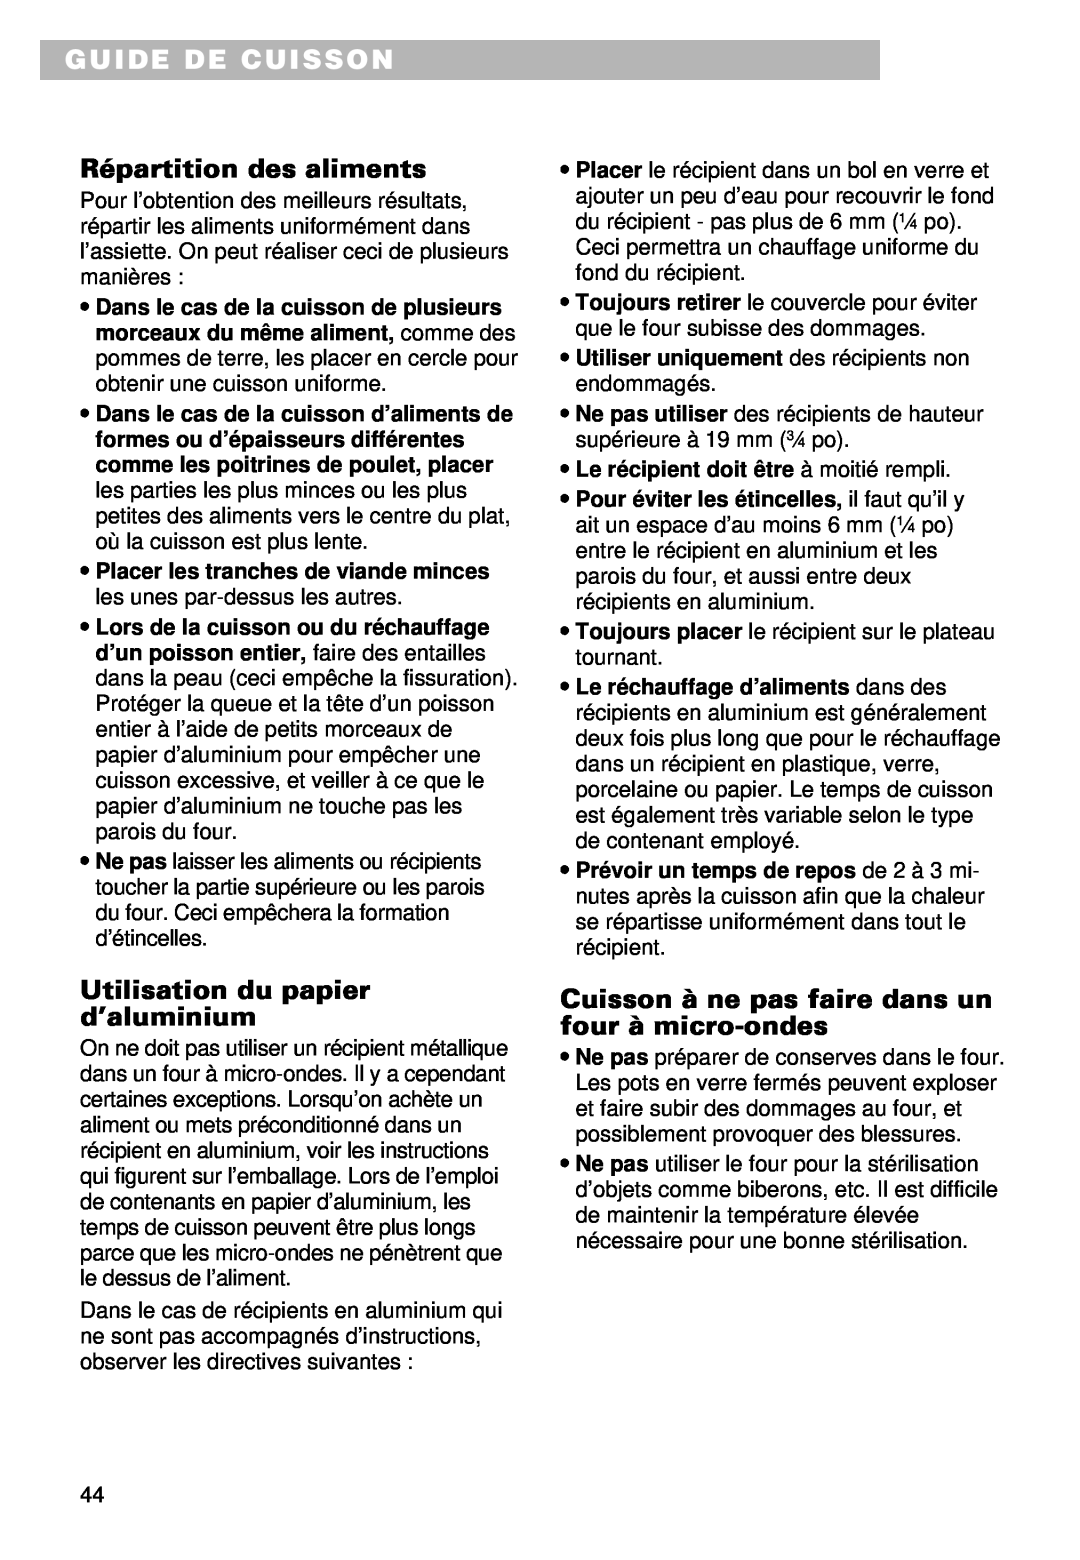 Whirlpool MT9100SF, YMT9101SF, YMT9090SF Guide De Cuisson, Répartition des aliments, Utilisation du papier d’aluminium 